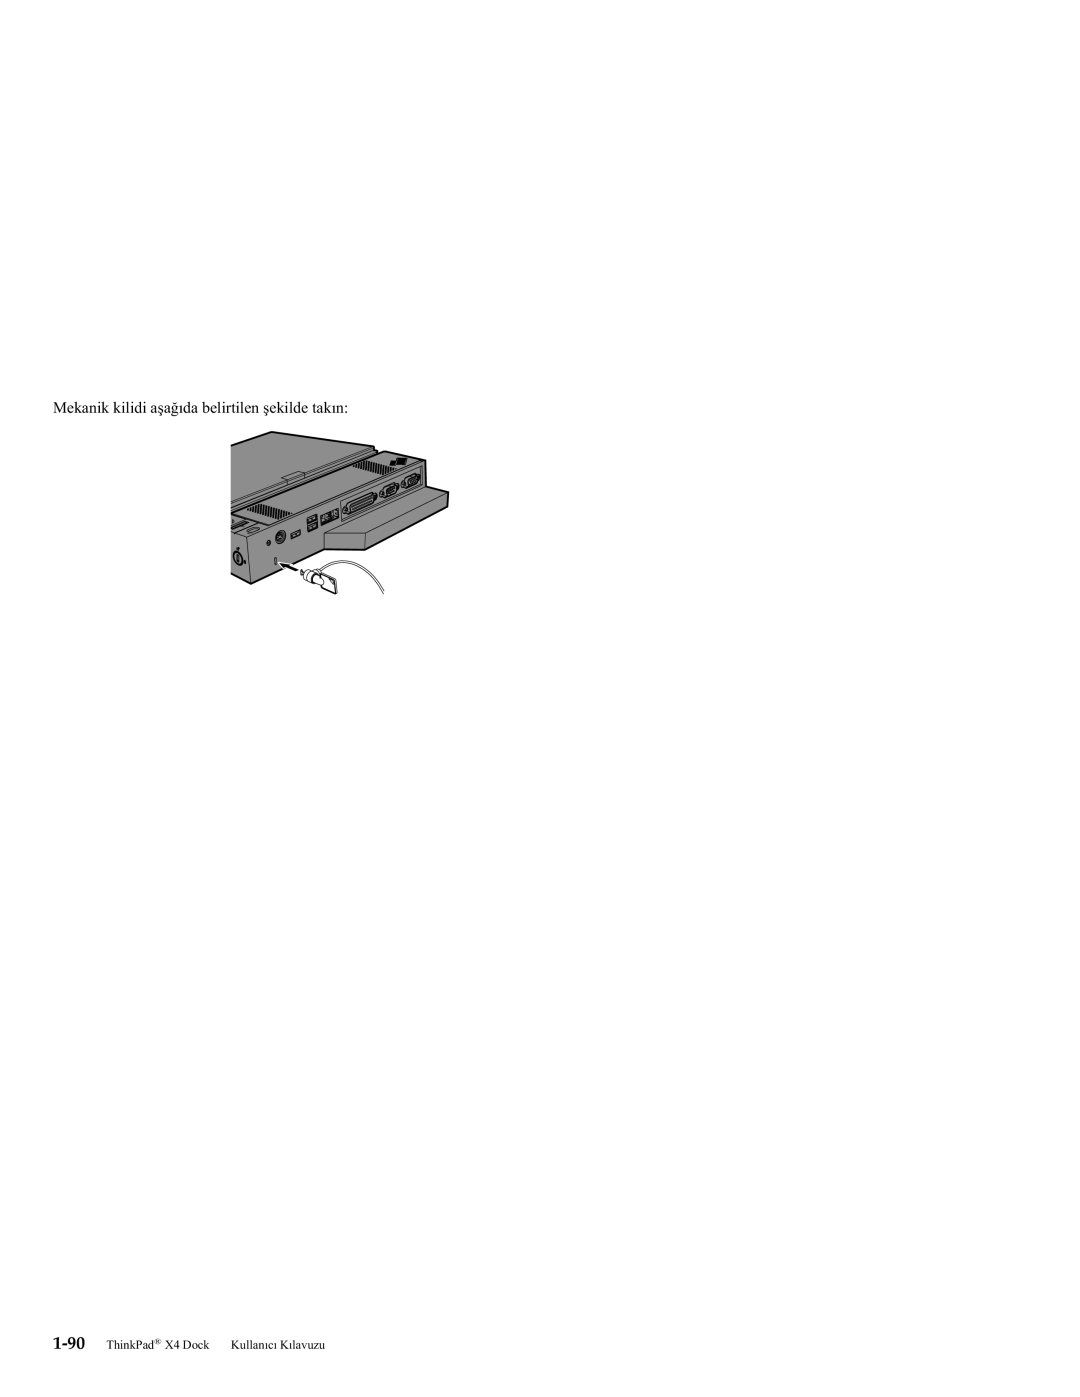 IBM manual Mekanik kilidi aşağıda belirtilen şekilde takın, ThinkPad X4 Dock Kullanıcı Kılavuzu 